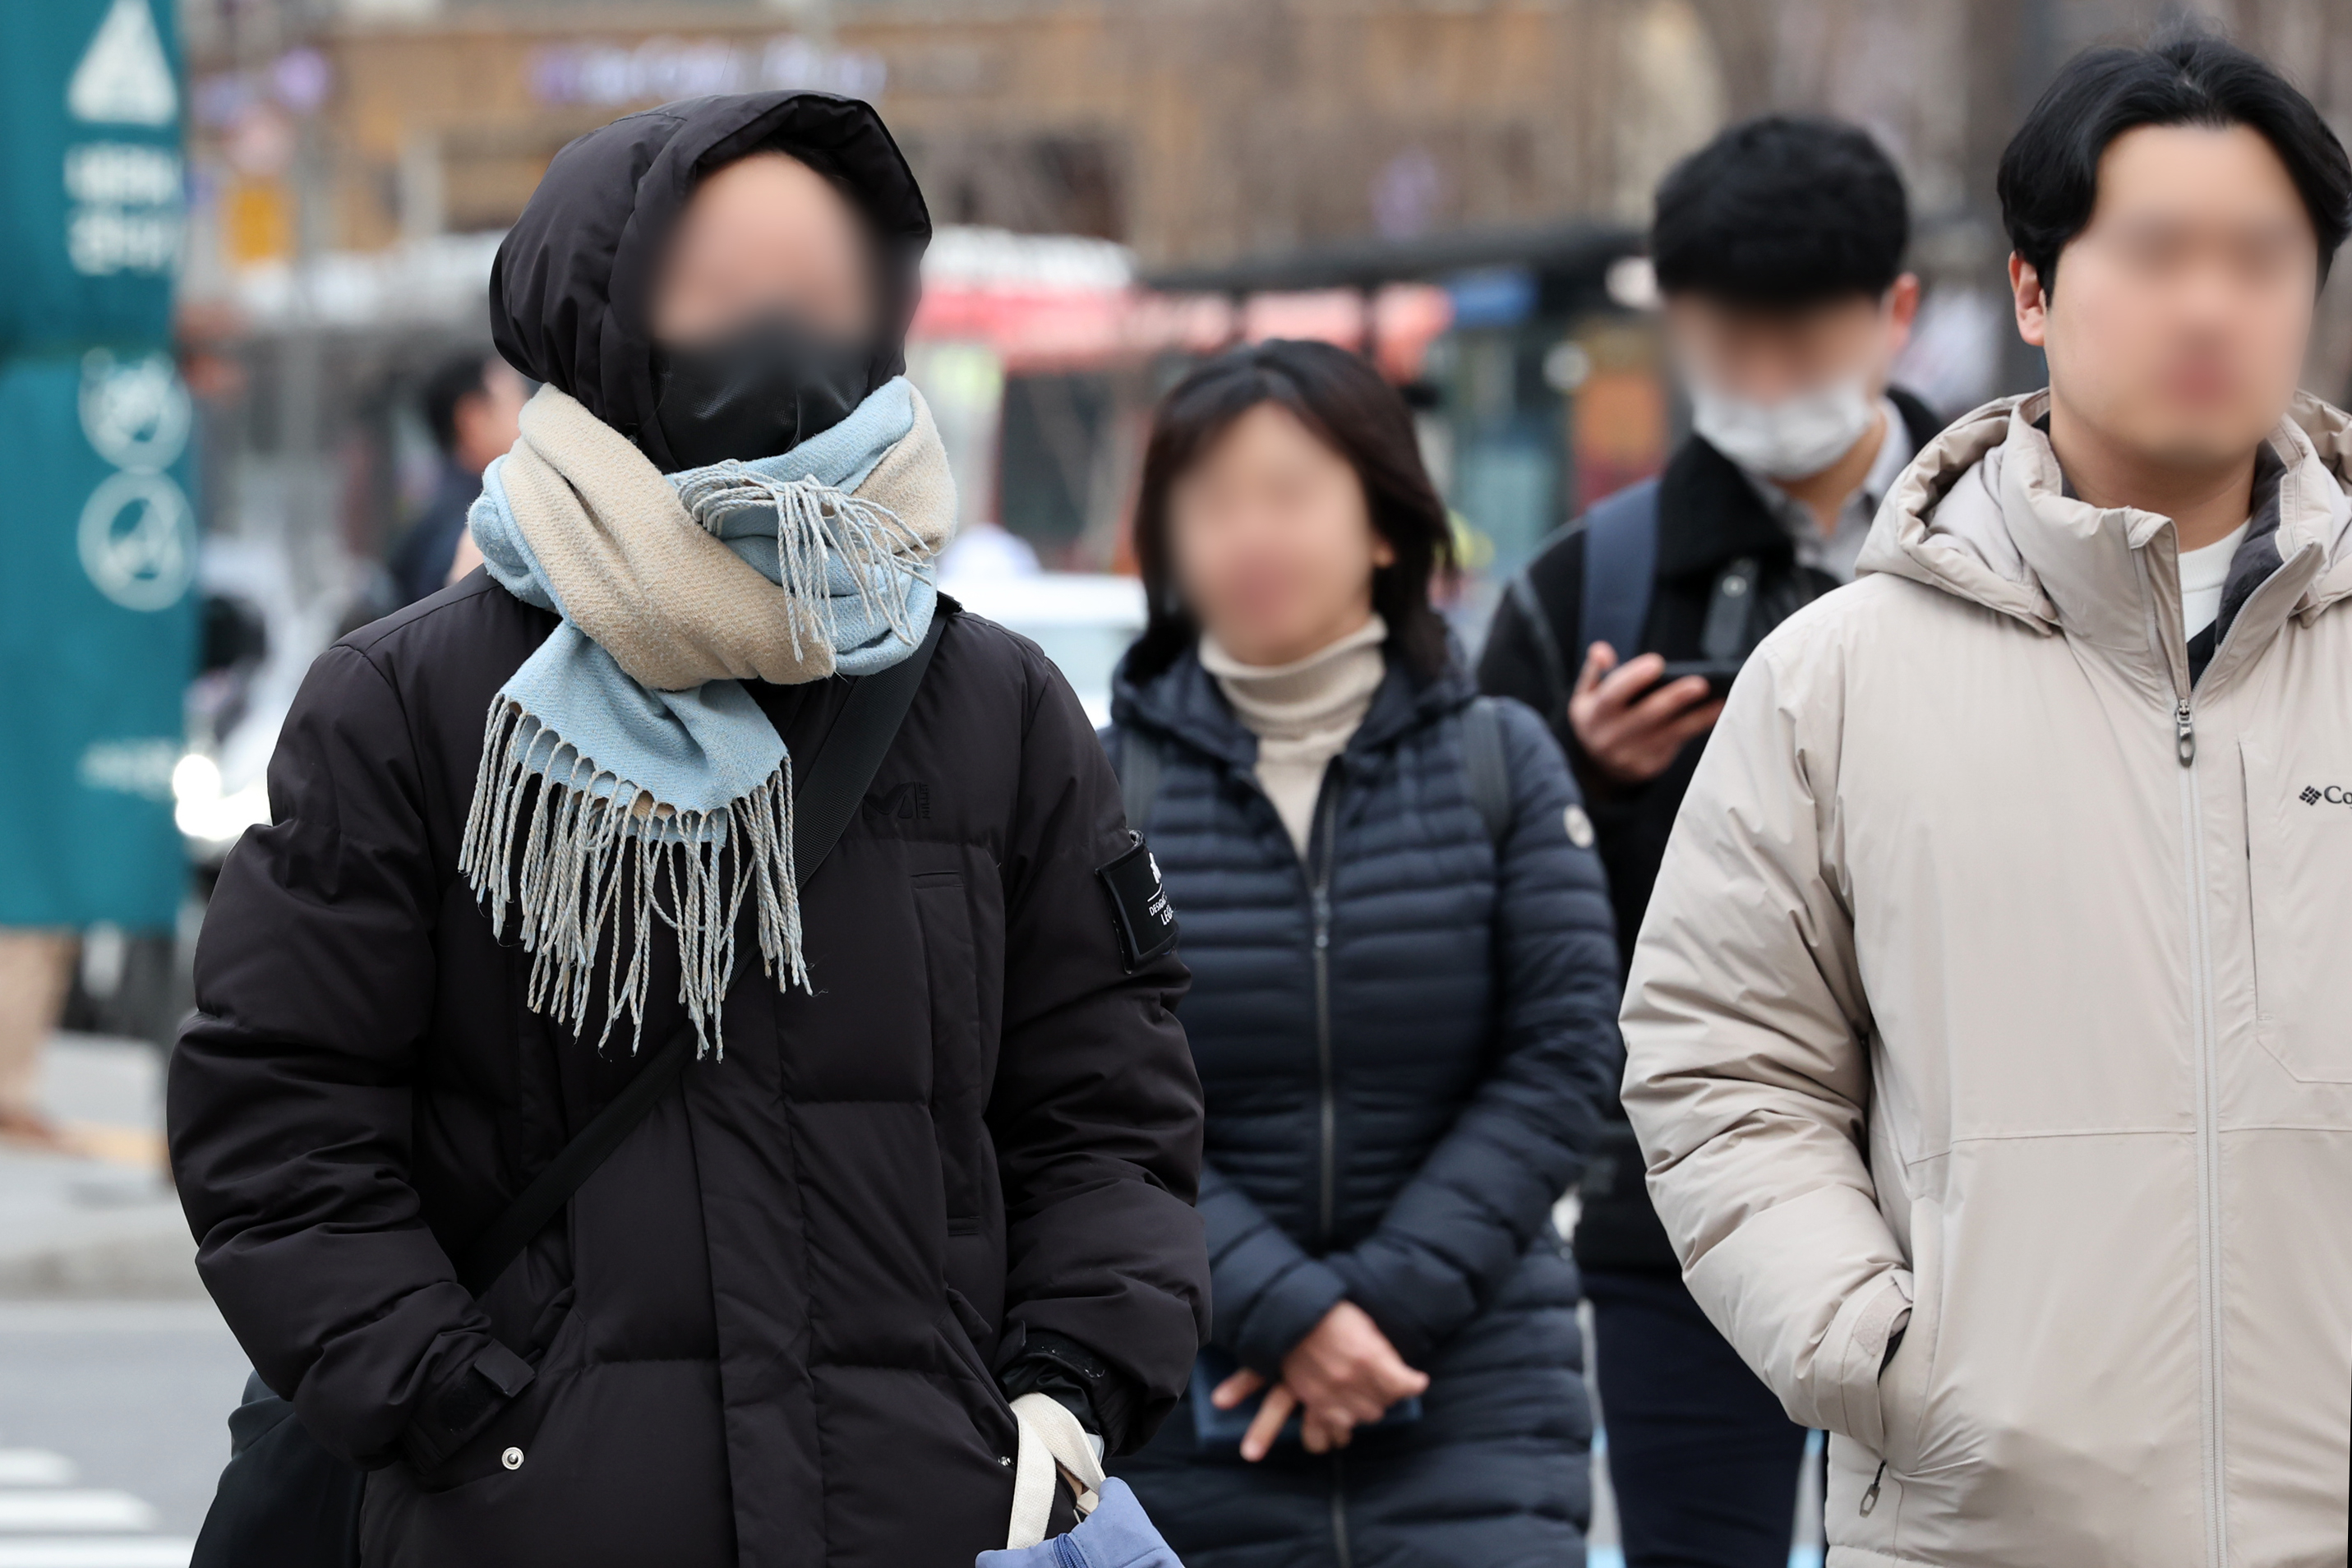 큰 일교차로 쌀쌀한 아침 날씨를 보인 28일 오전 서울 종로구 세종대로 인근에서 두터운 외투를 입은 시민들이 이동하고 있다. 뉴시스